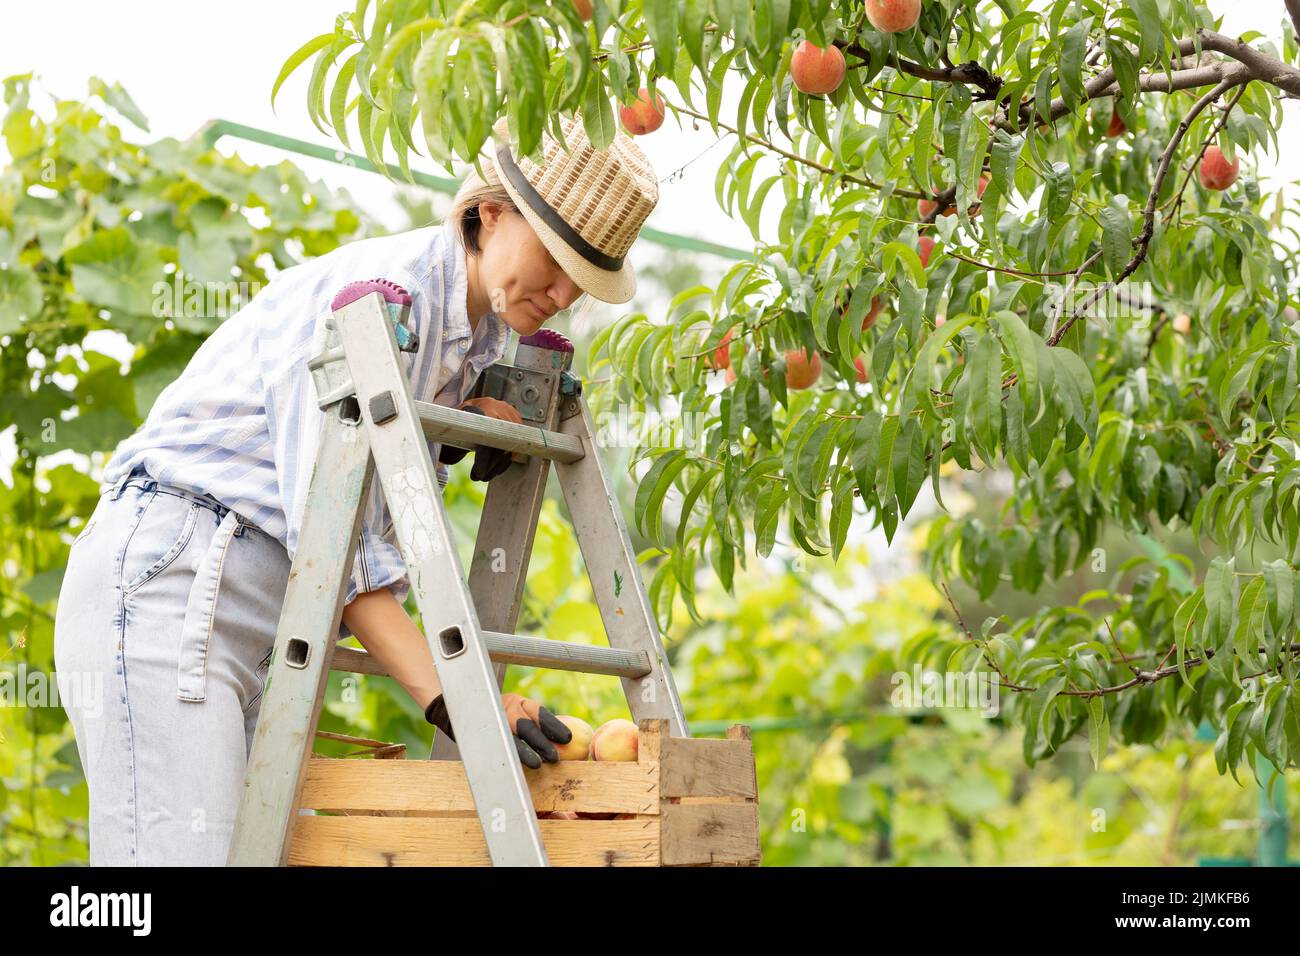 jeune femme agriculteur récolte des pêches de l'arbre dans le jardin. Une femme se tient sur une échelle et met des pêches dans une boîte. Concept d'agriculture Banque D'Images